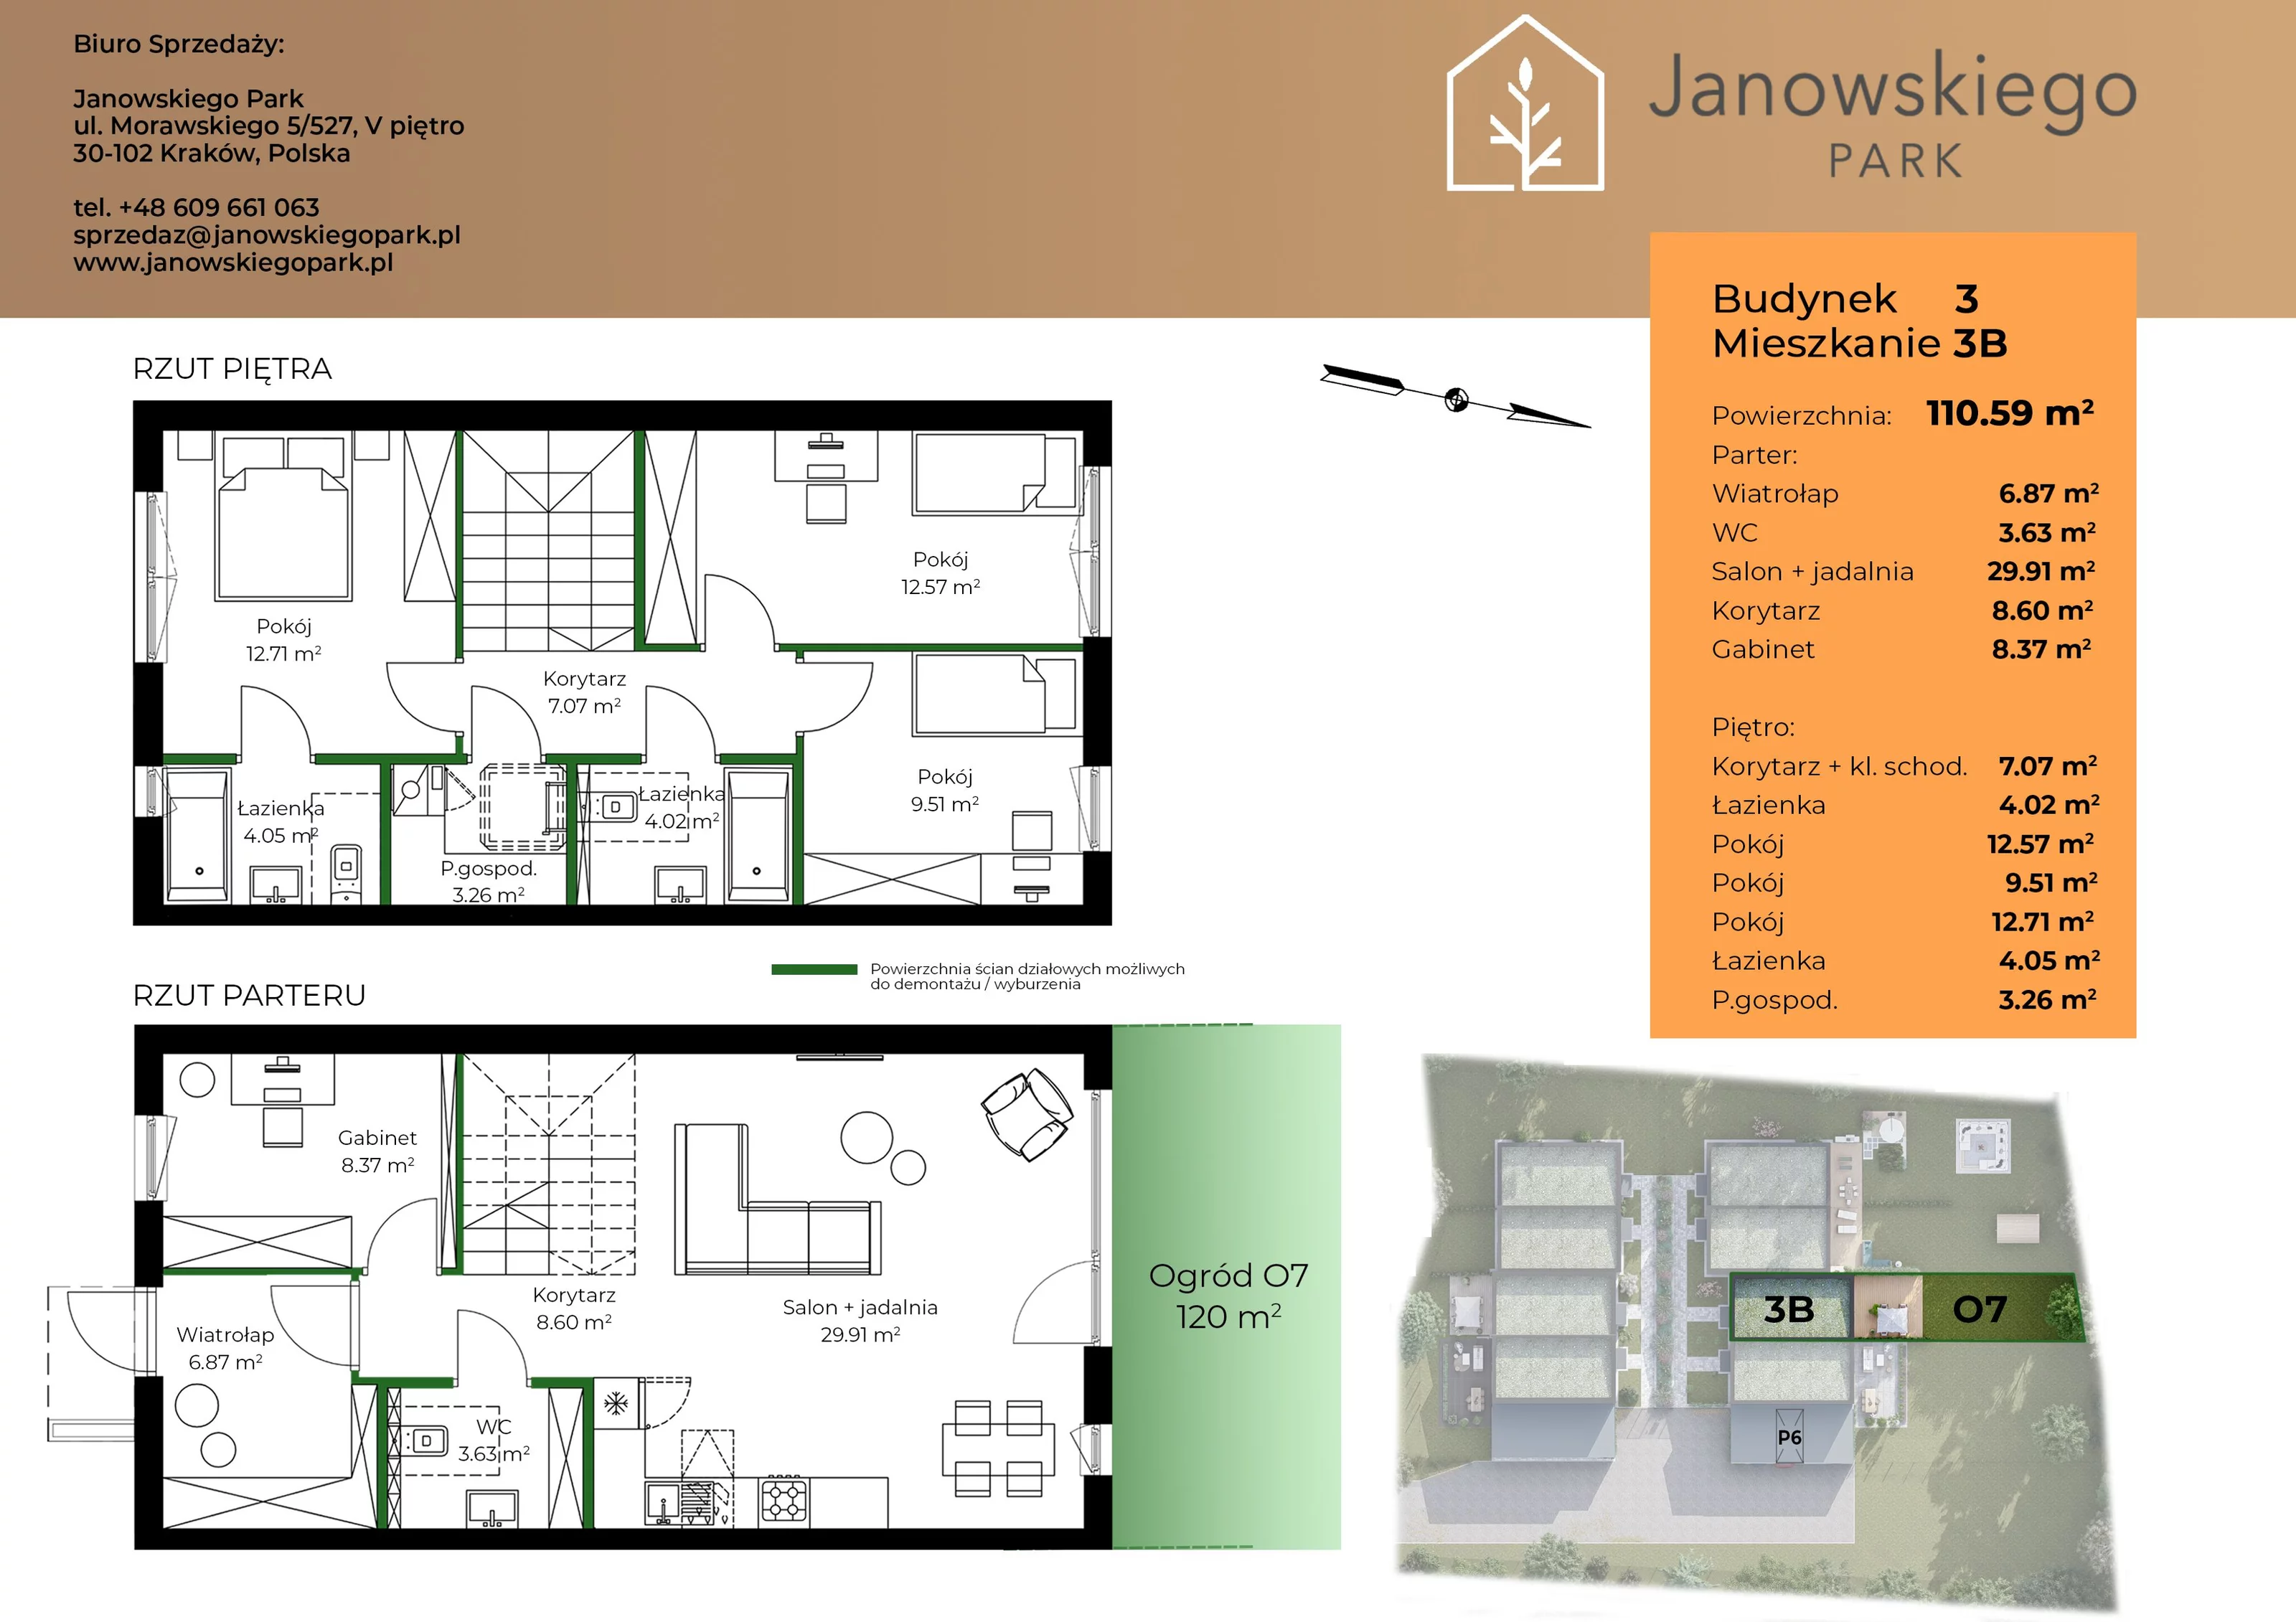 Mieszkanie 110,59 m², parter, oferta nr B3-3B, Janowskiego Park, Kraków, Swoszowice, Kliny Borkowskie, ul. Jana Janowskiego